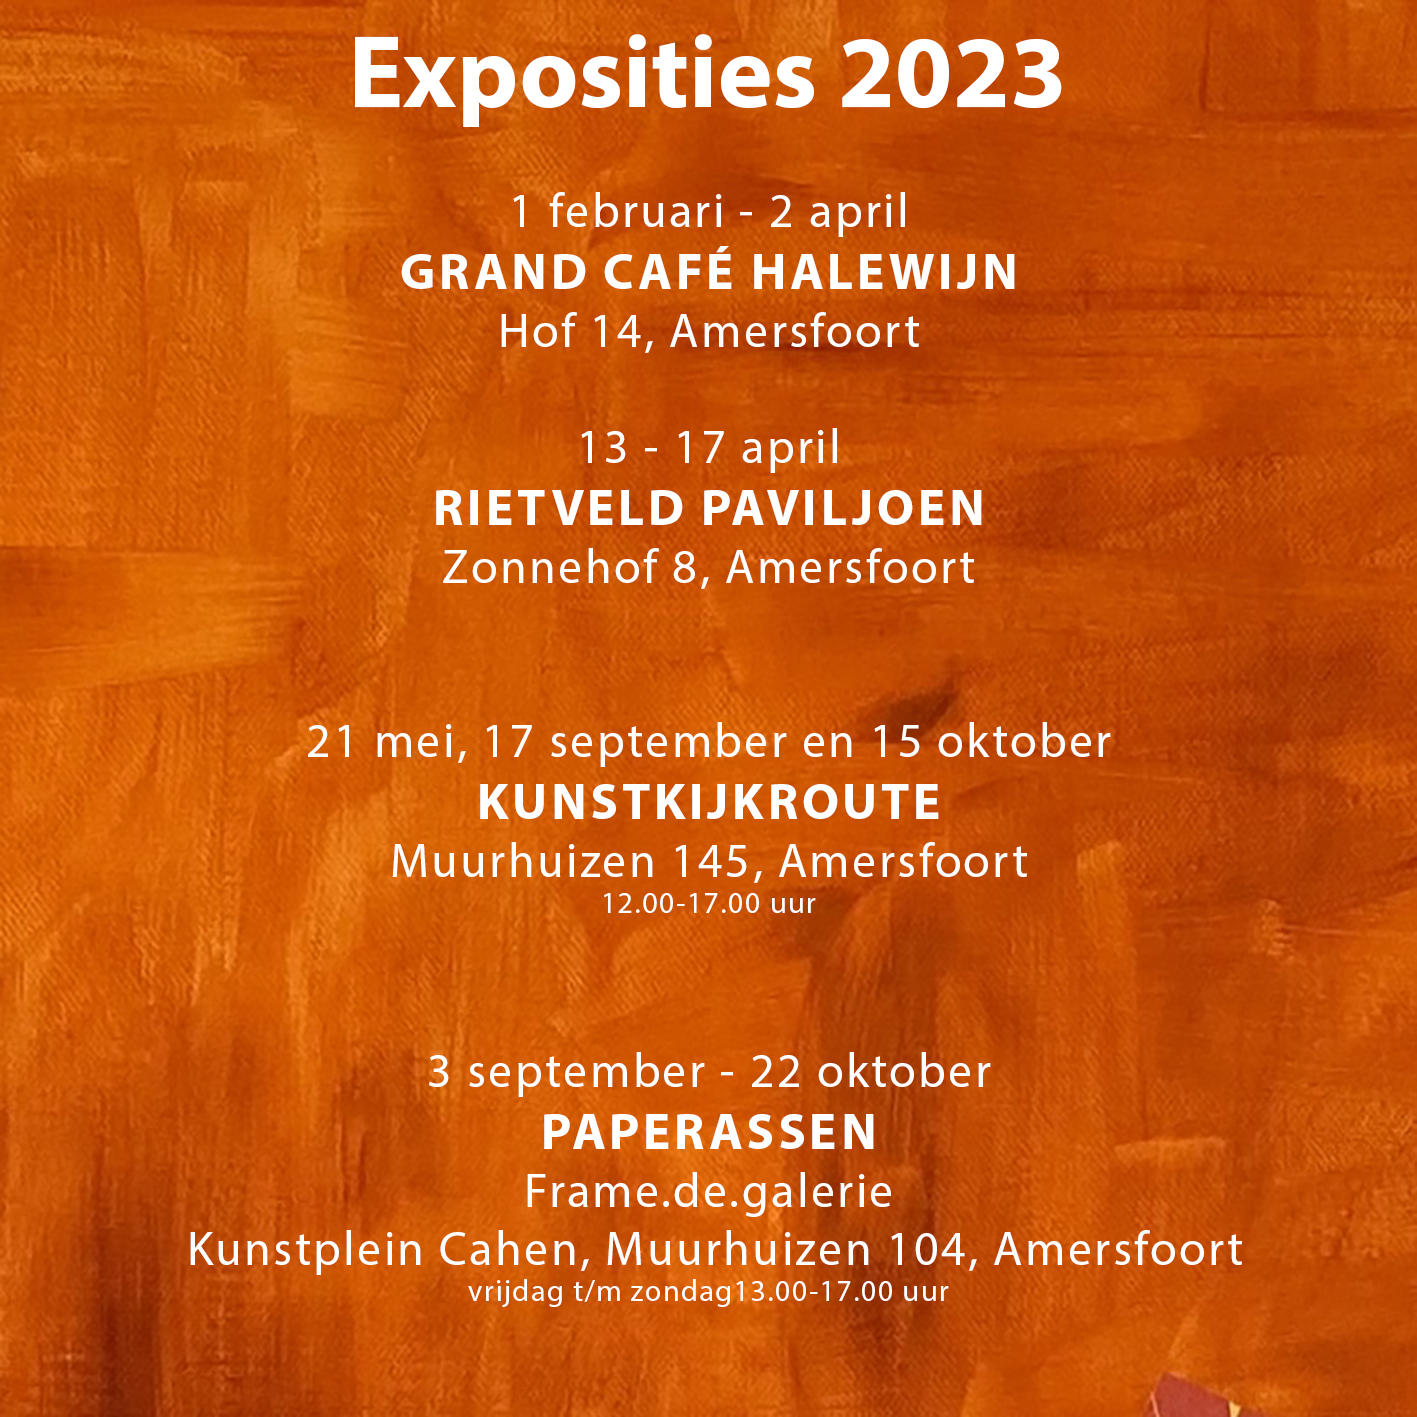 Exposities 2023 Sabine van Erkel